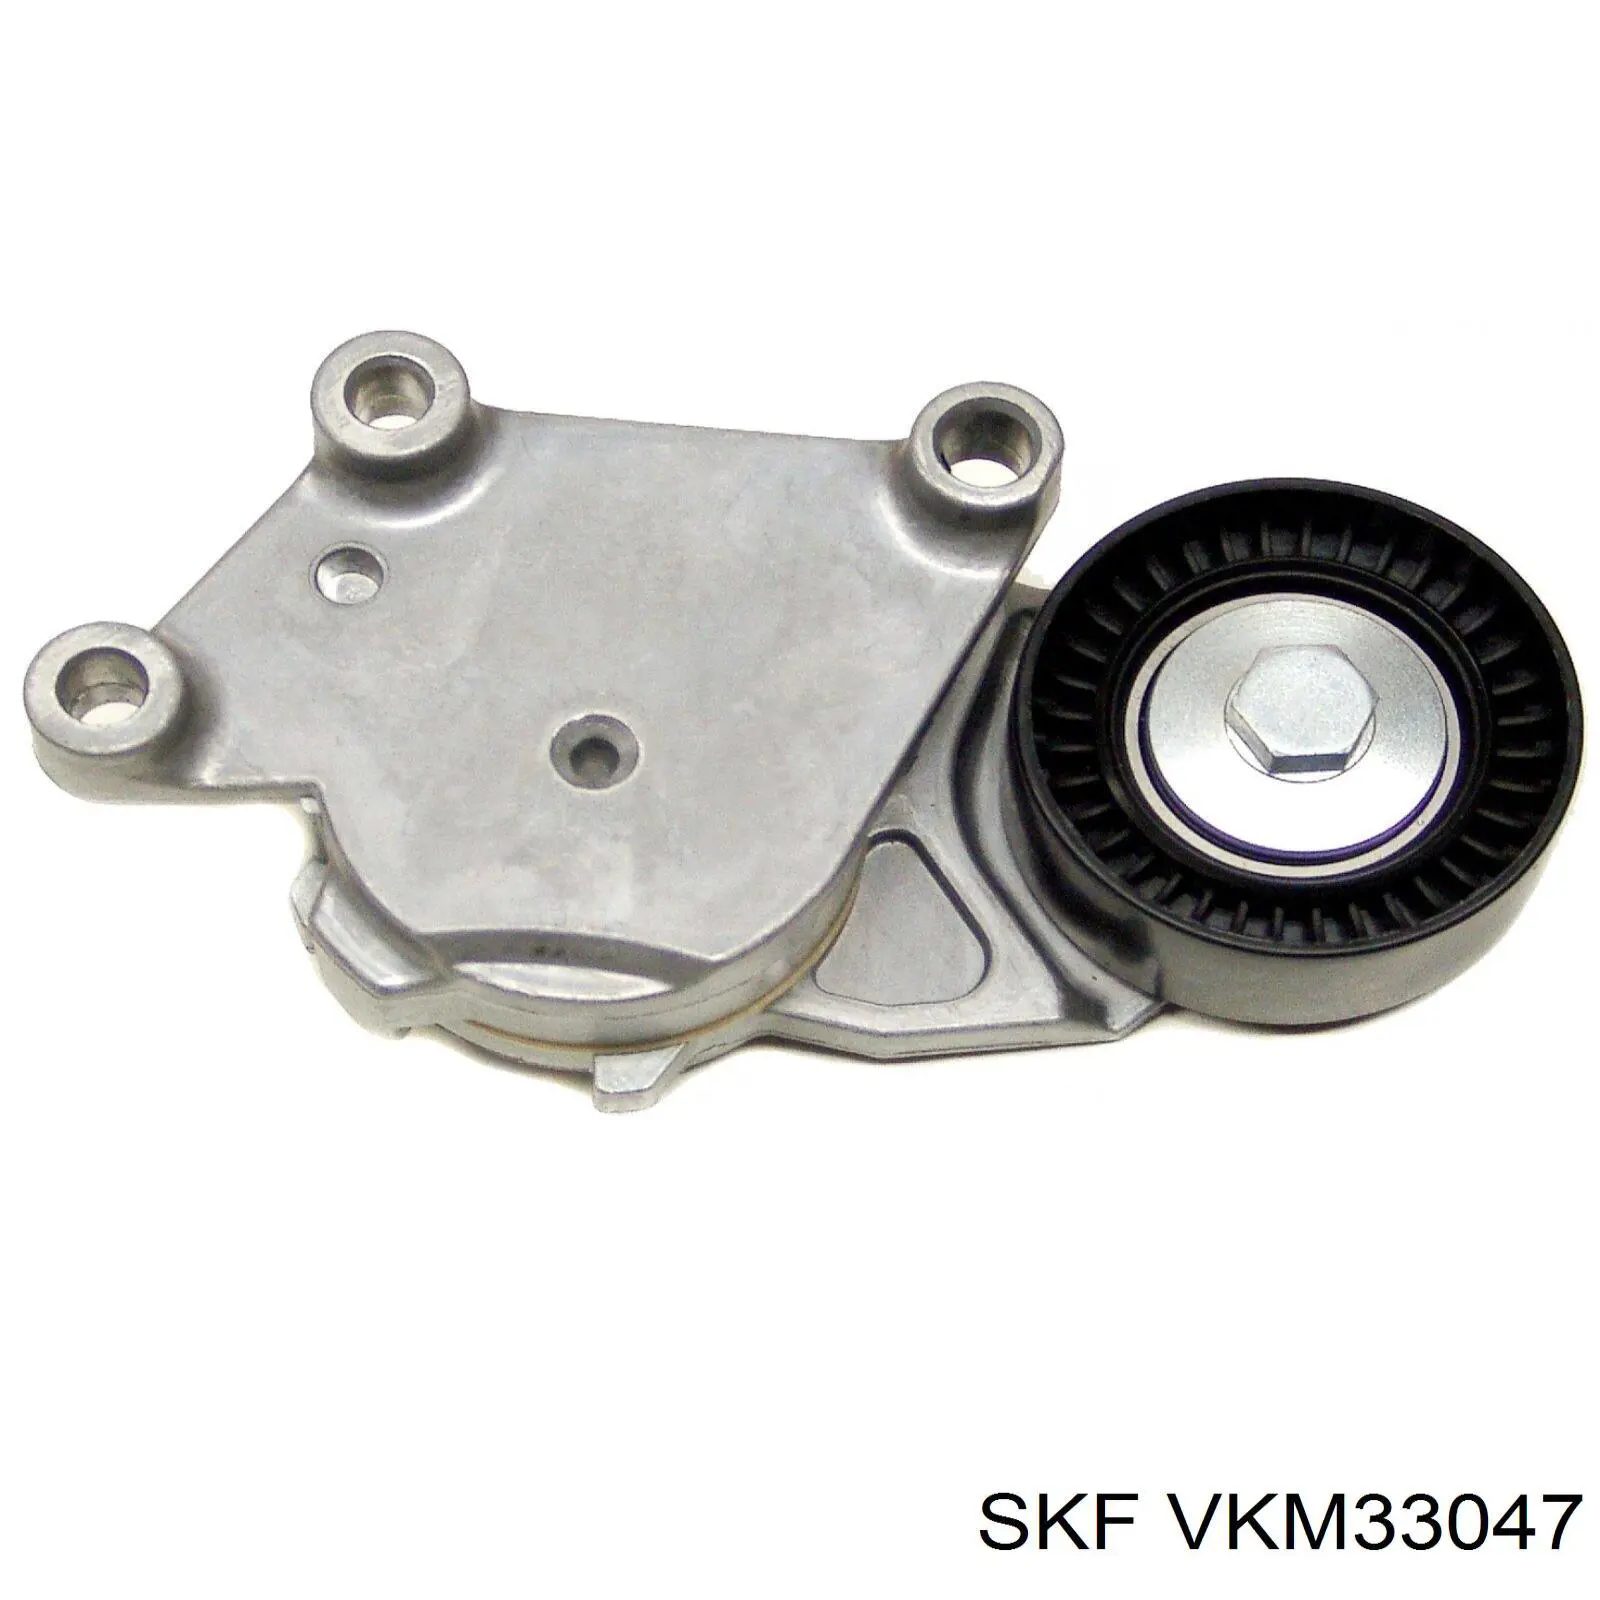 VKM33047 SKF polea tensora, correa poli v